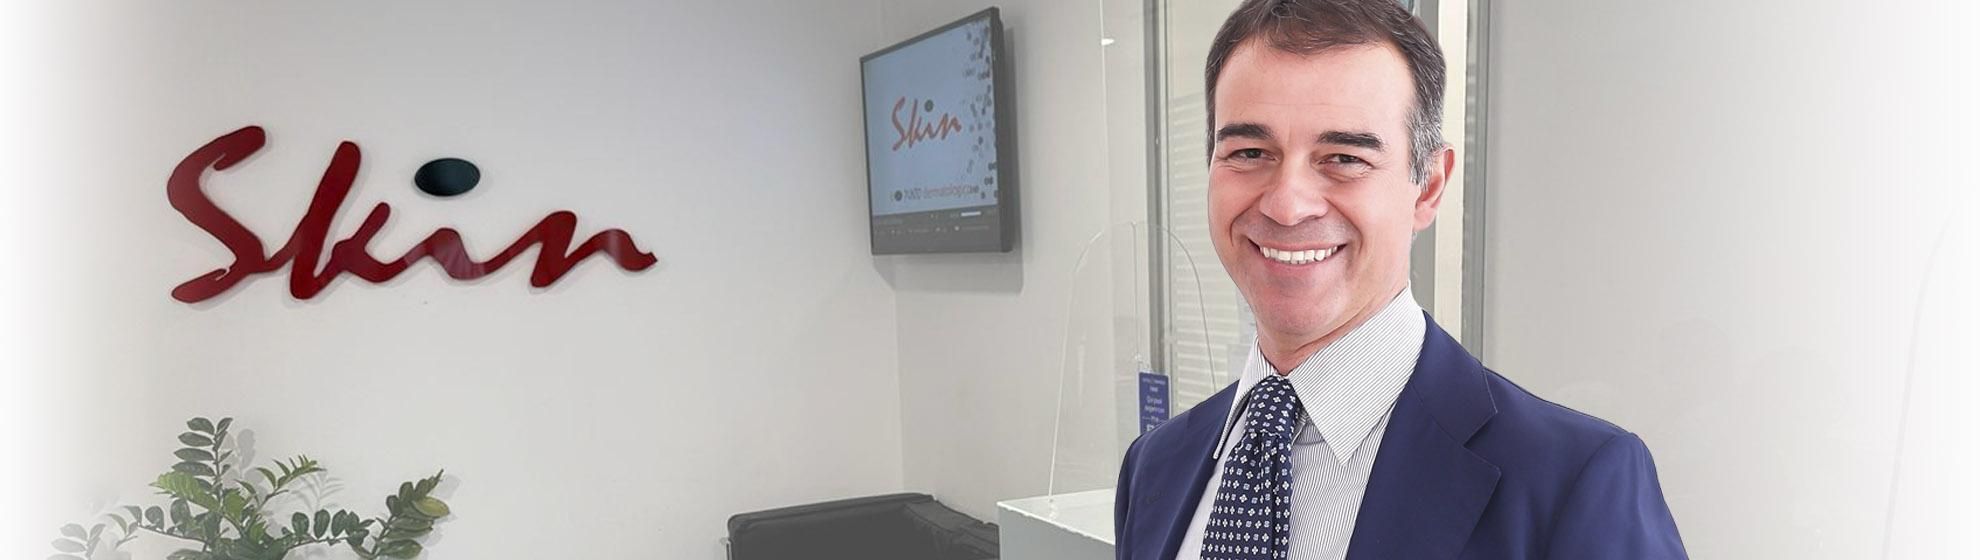 Dr. Stefano Chiummariello,Specialista in Chirurgia Plastica e Estetica